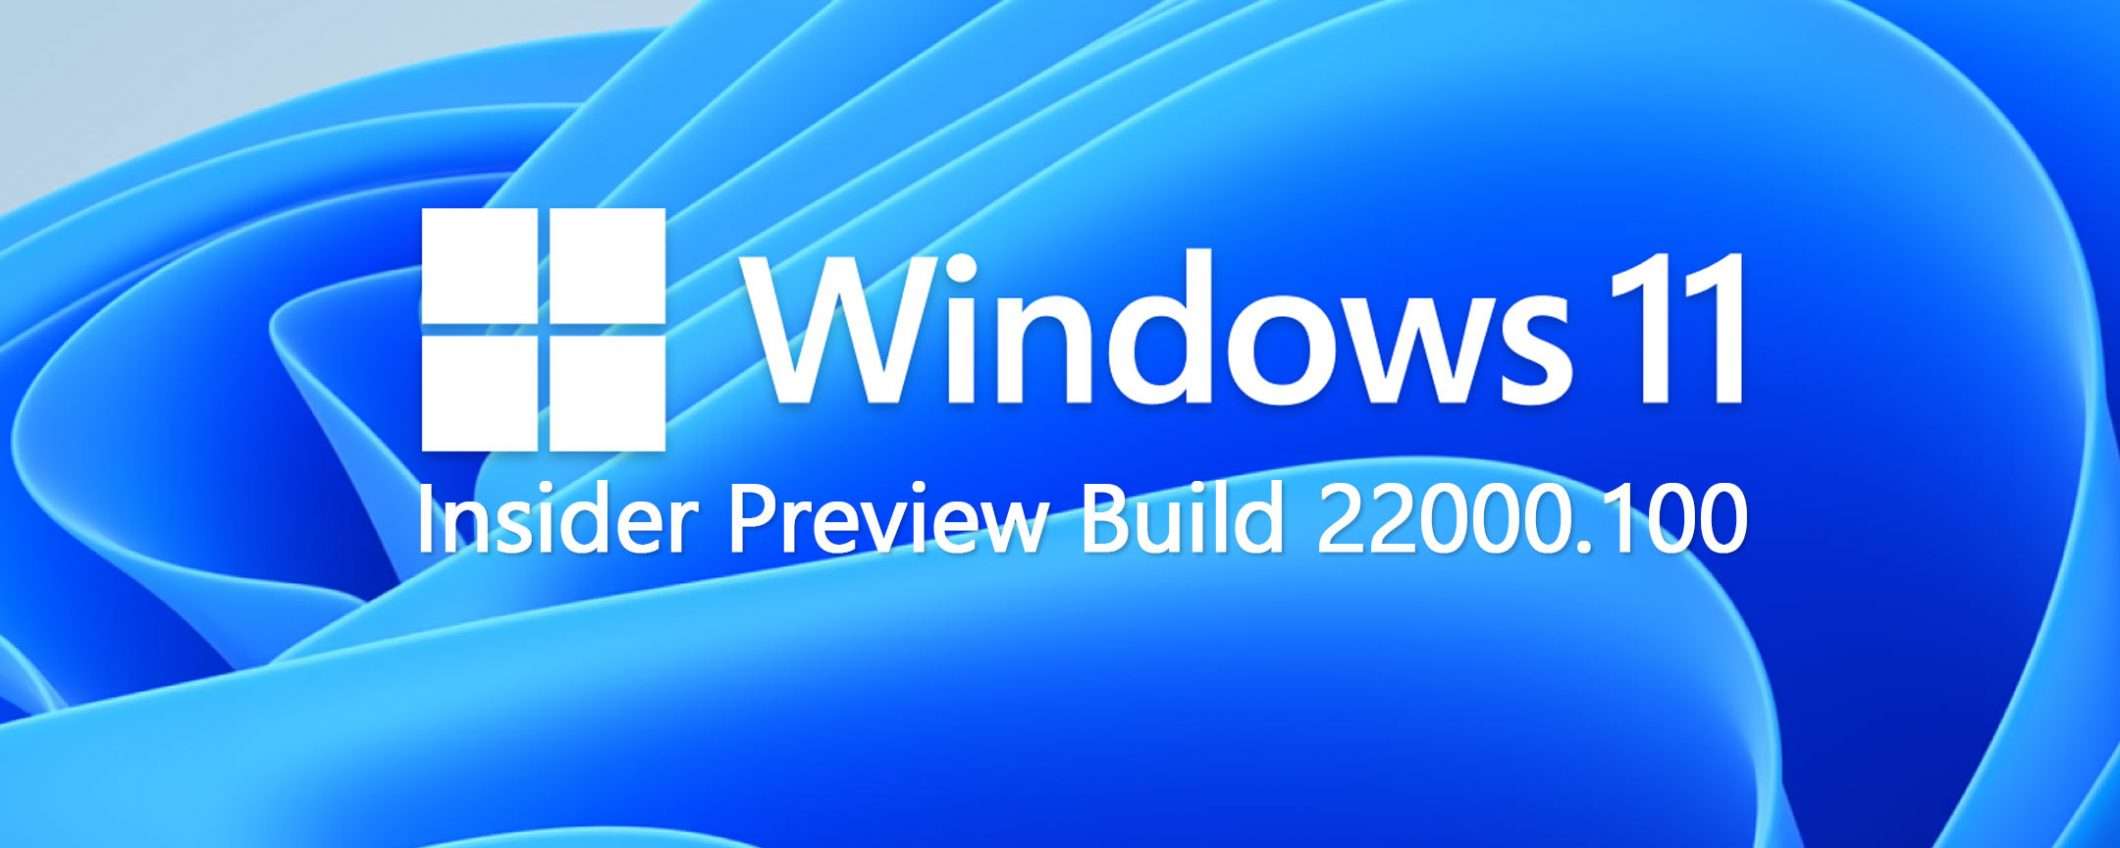 Windows 11: disponibile la prima versione beta